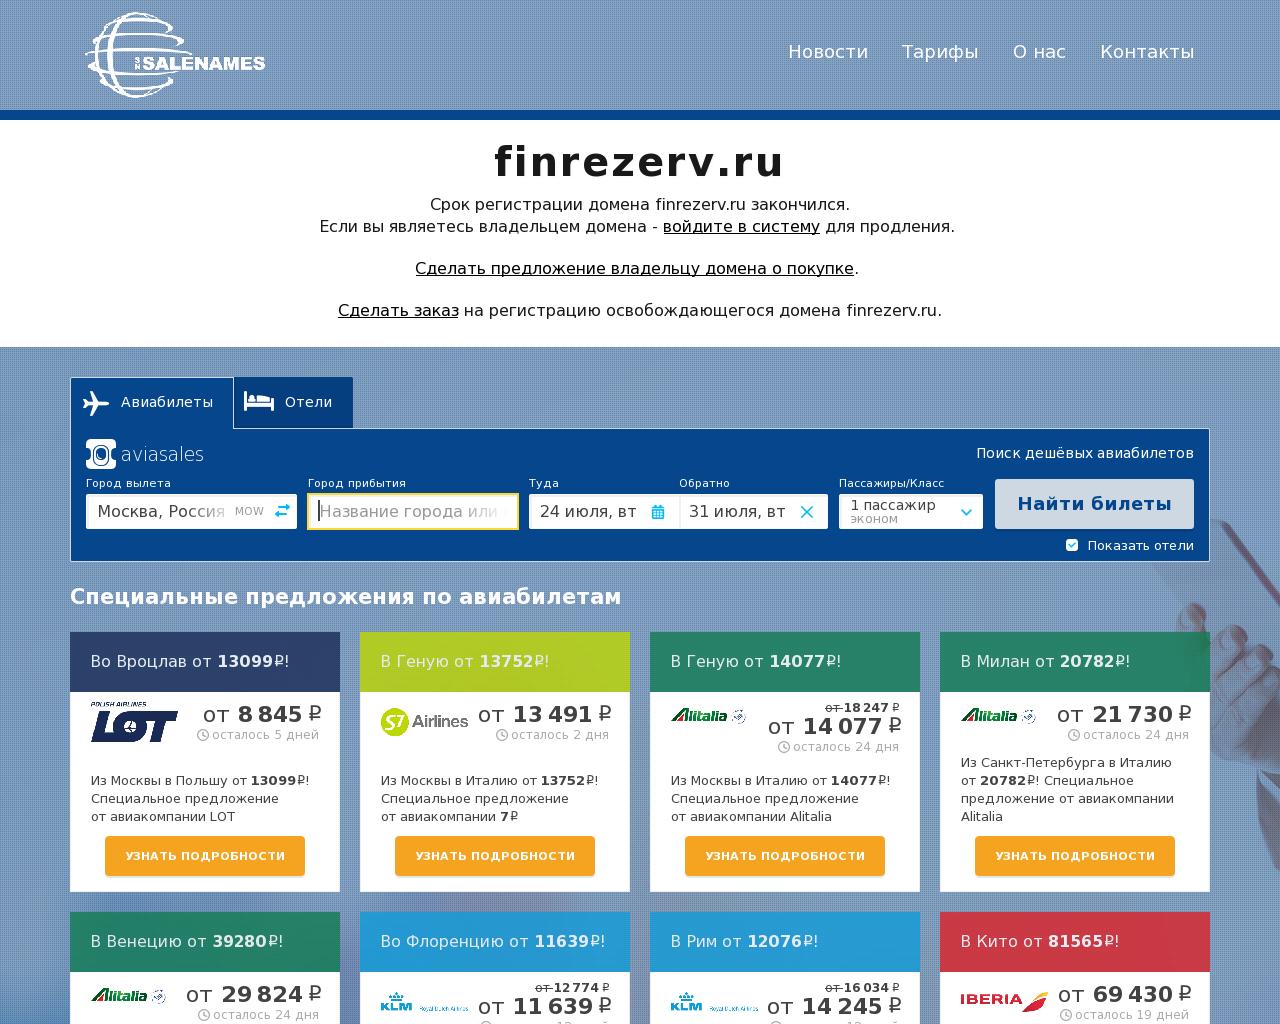 Изображение сайта finrezerv.ru в разрешении 1280x1024